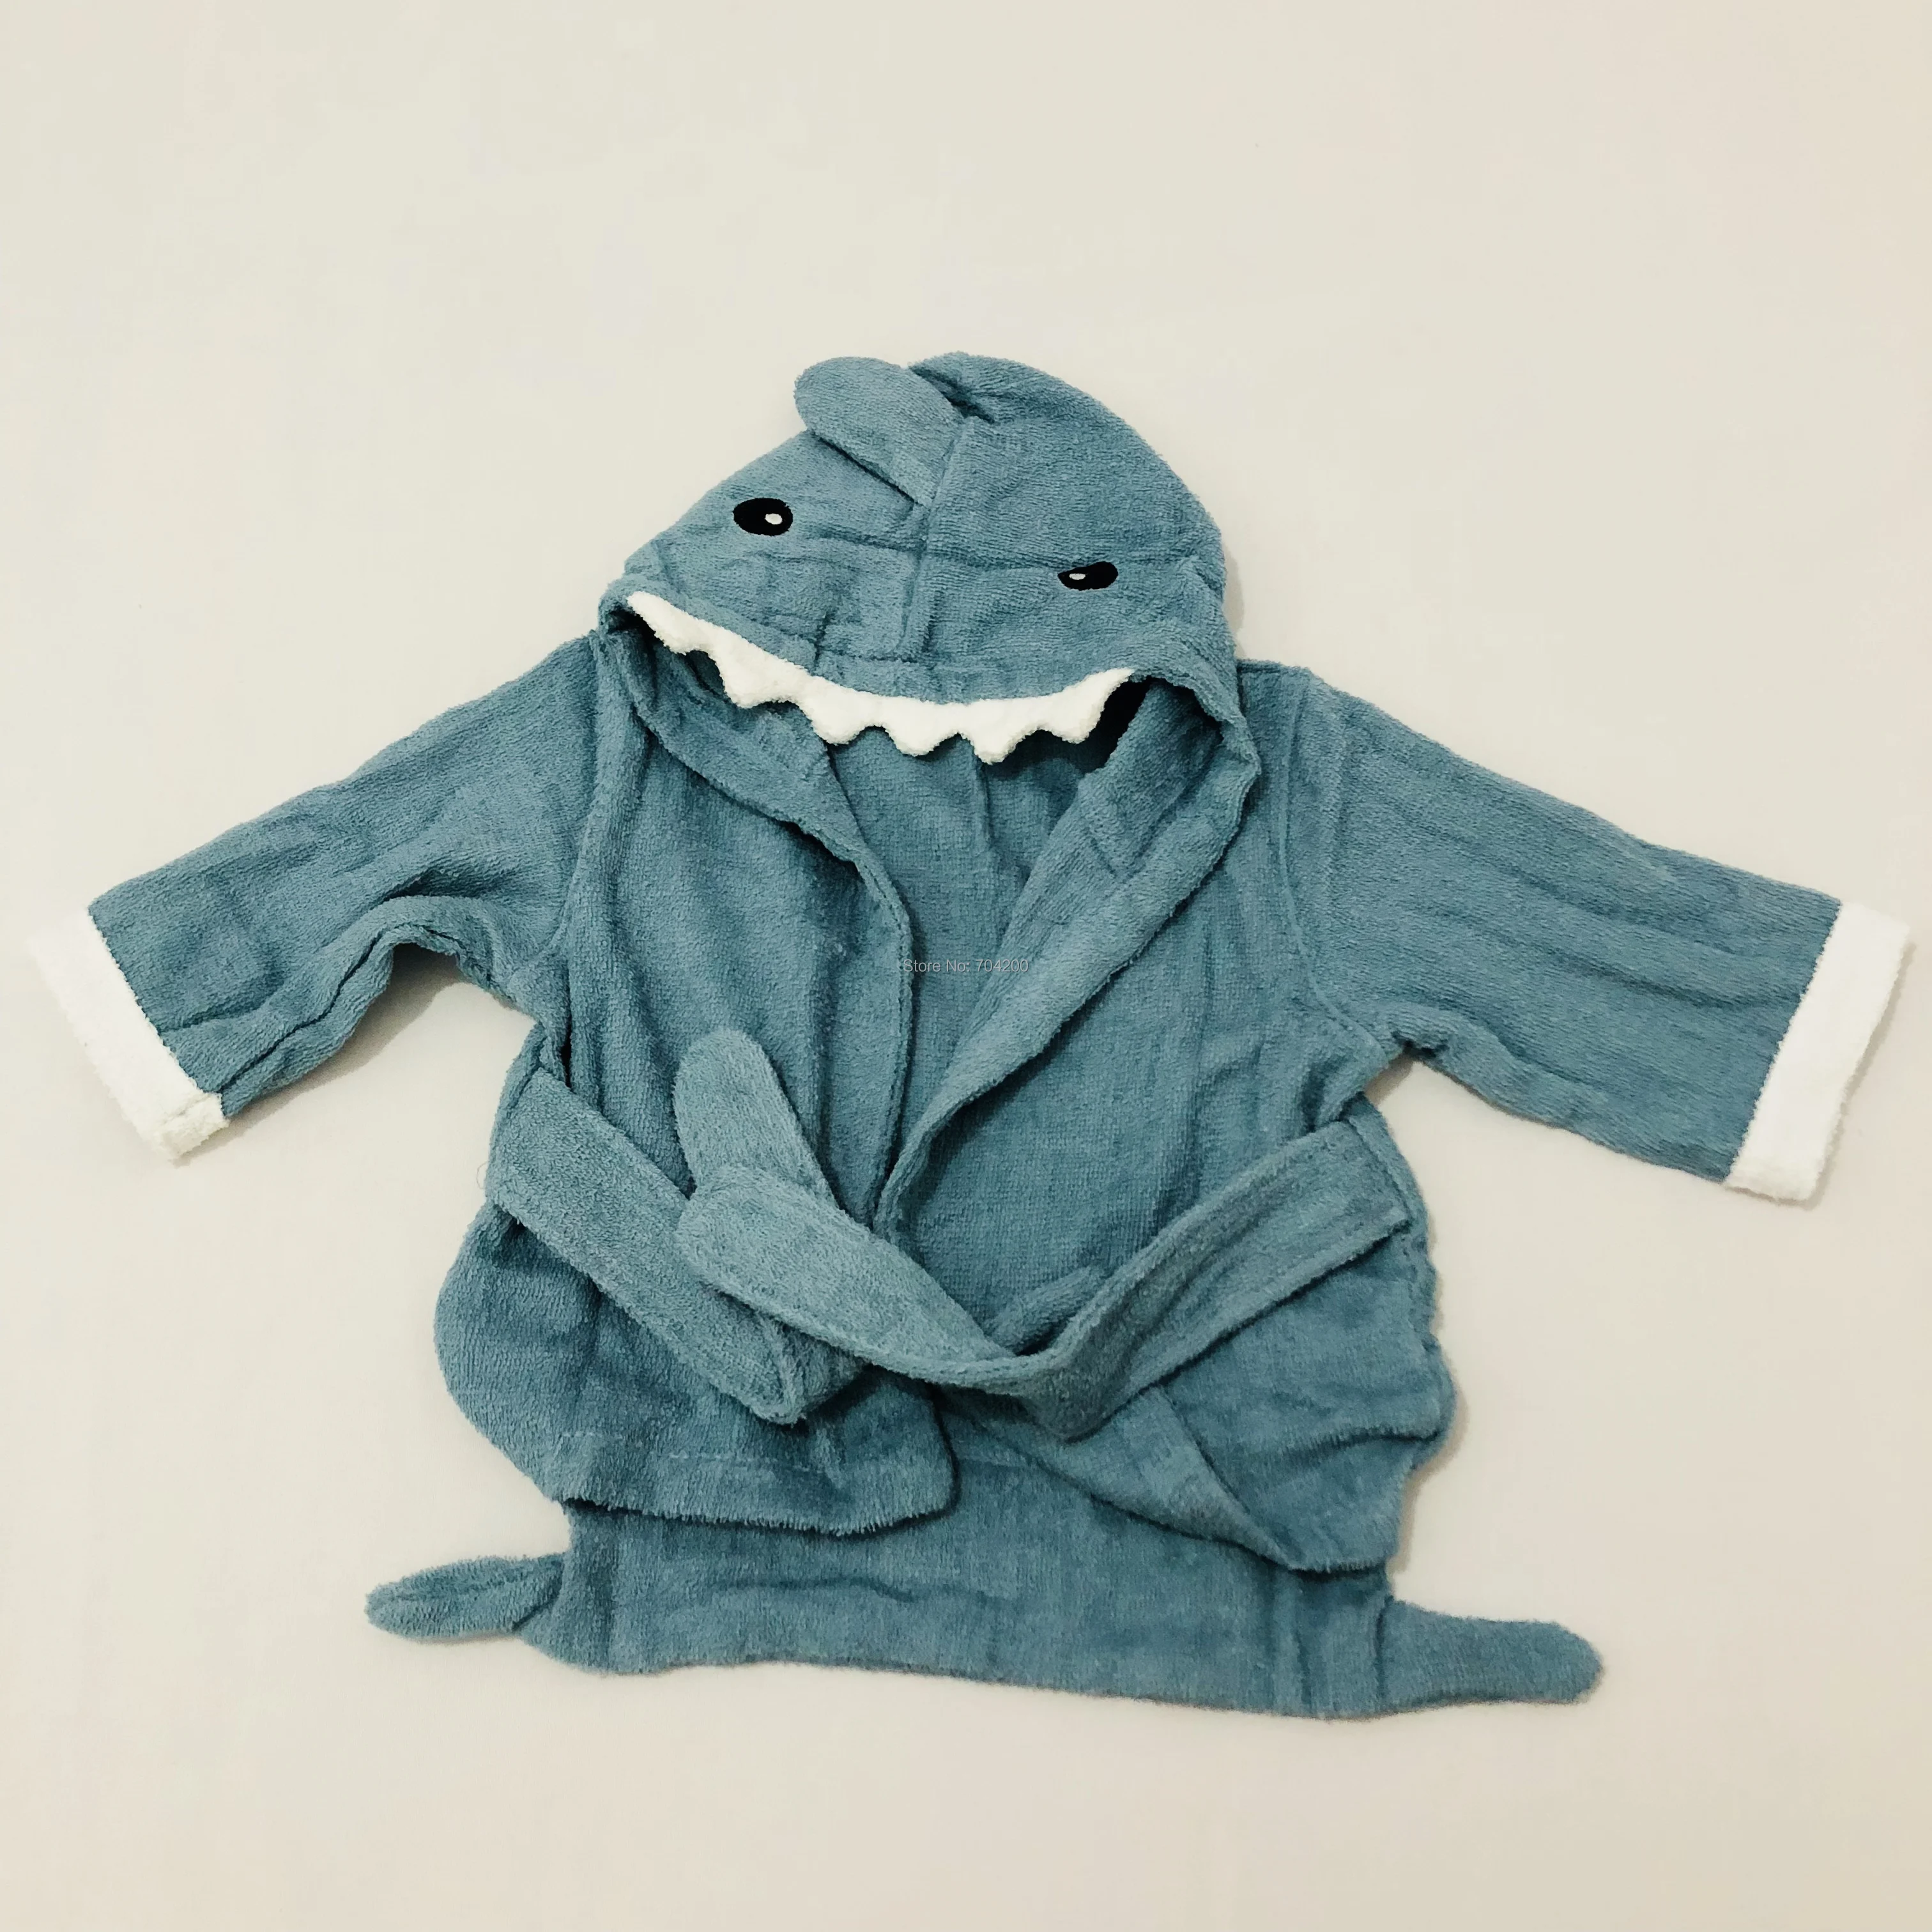 Размер L, Детские Мультяшные халаты с акулой, хлопковые полотенца для мальчиков и девочек, комплекты домашней одежды, детские пляжные халаты